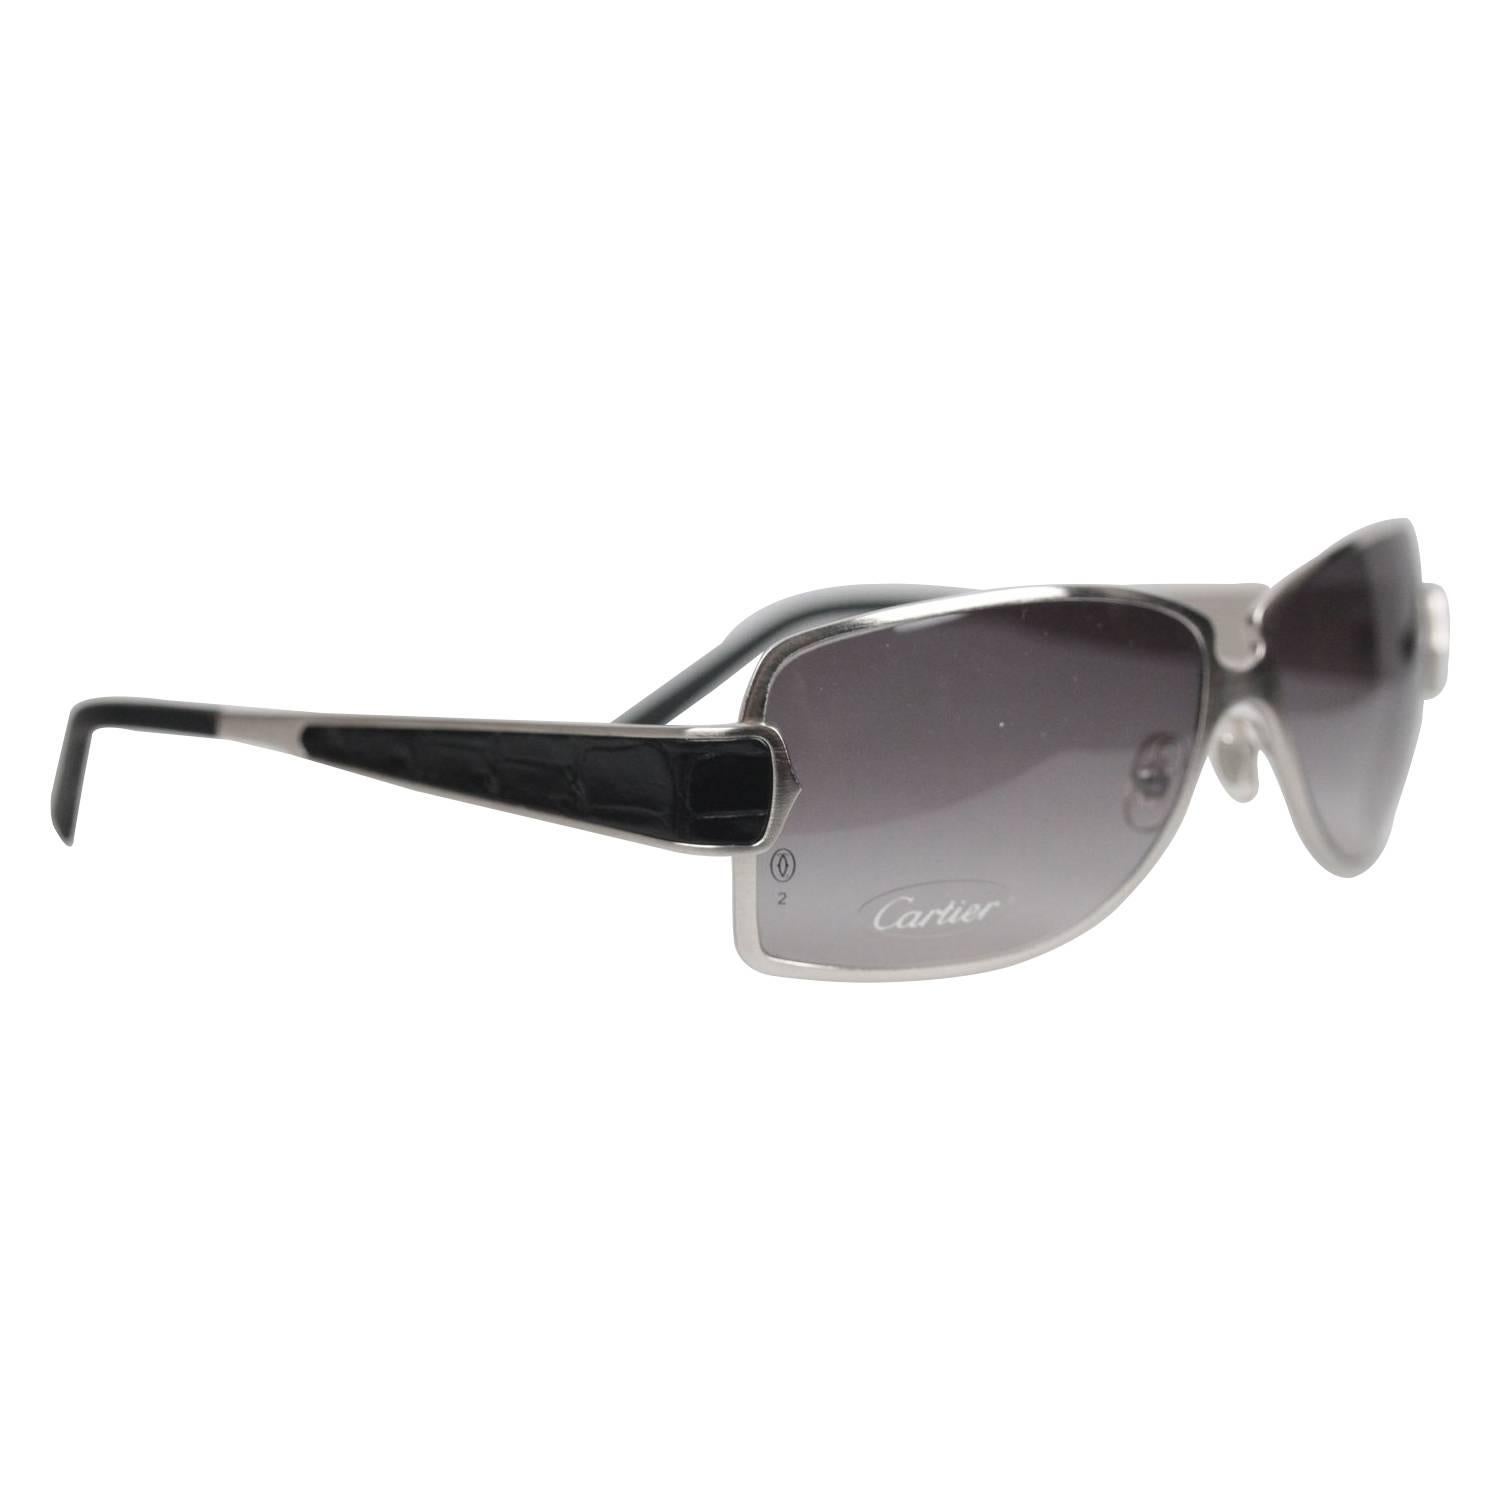 Cartier Paris Edition C de Cartier T8200722 Black Leather Sunglasses